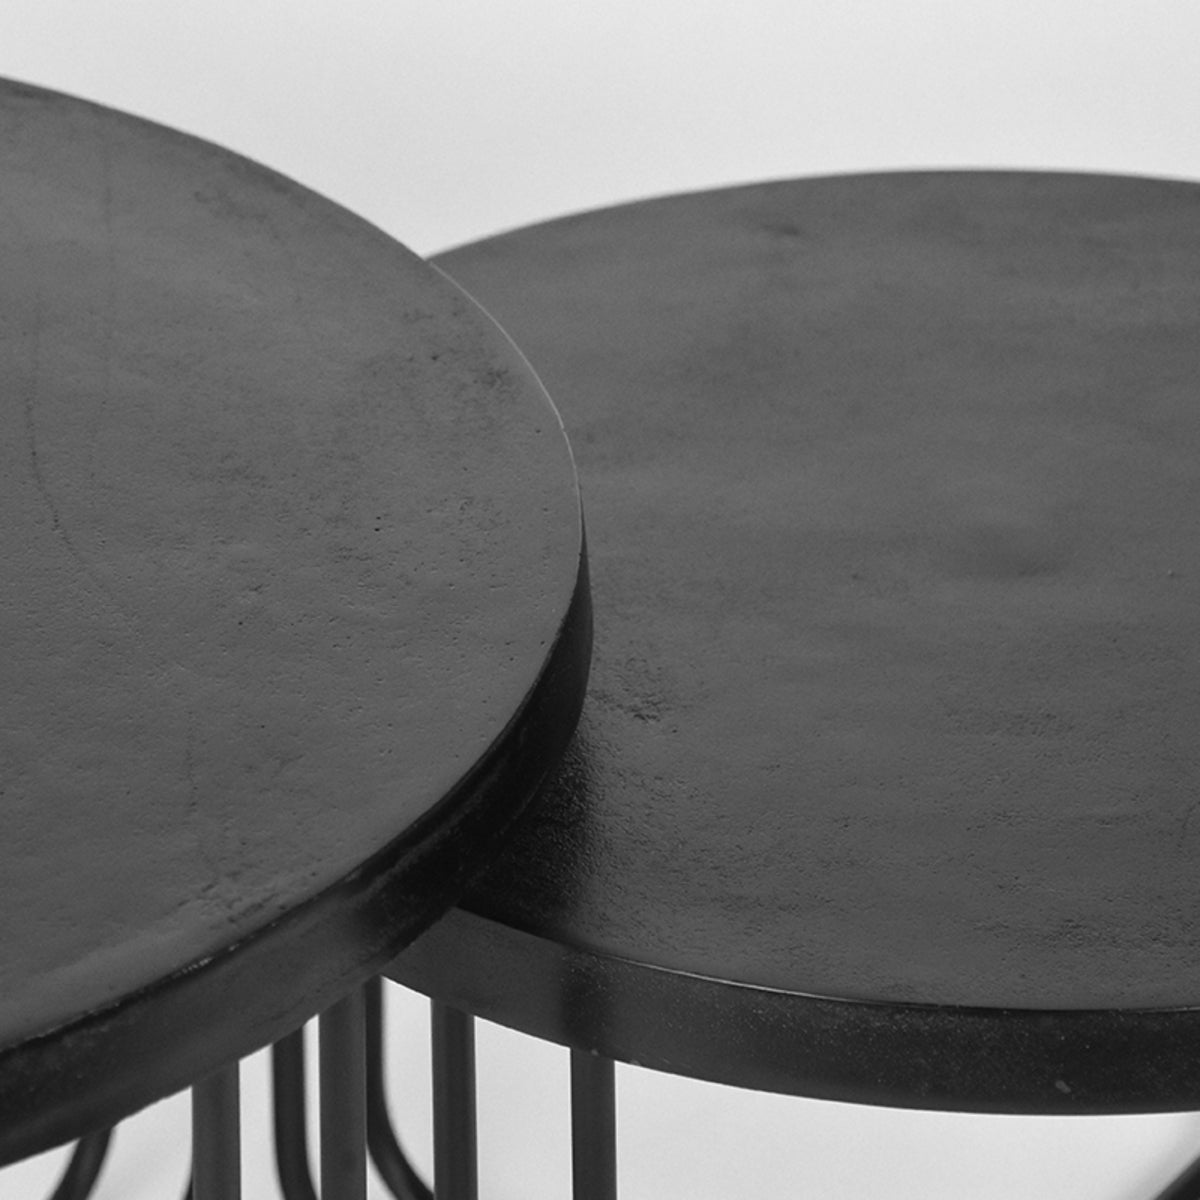 LABEL51 Coffee Table Set Brute - Black - Metal